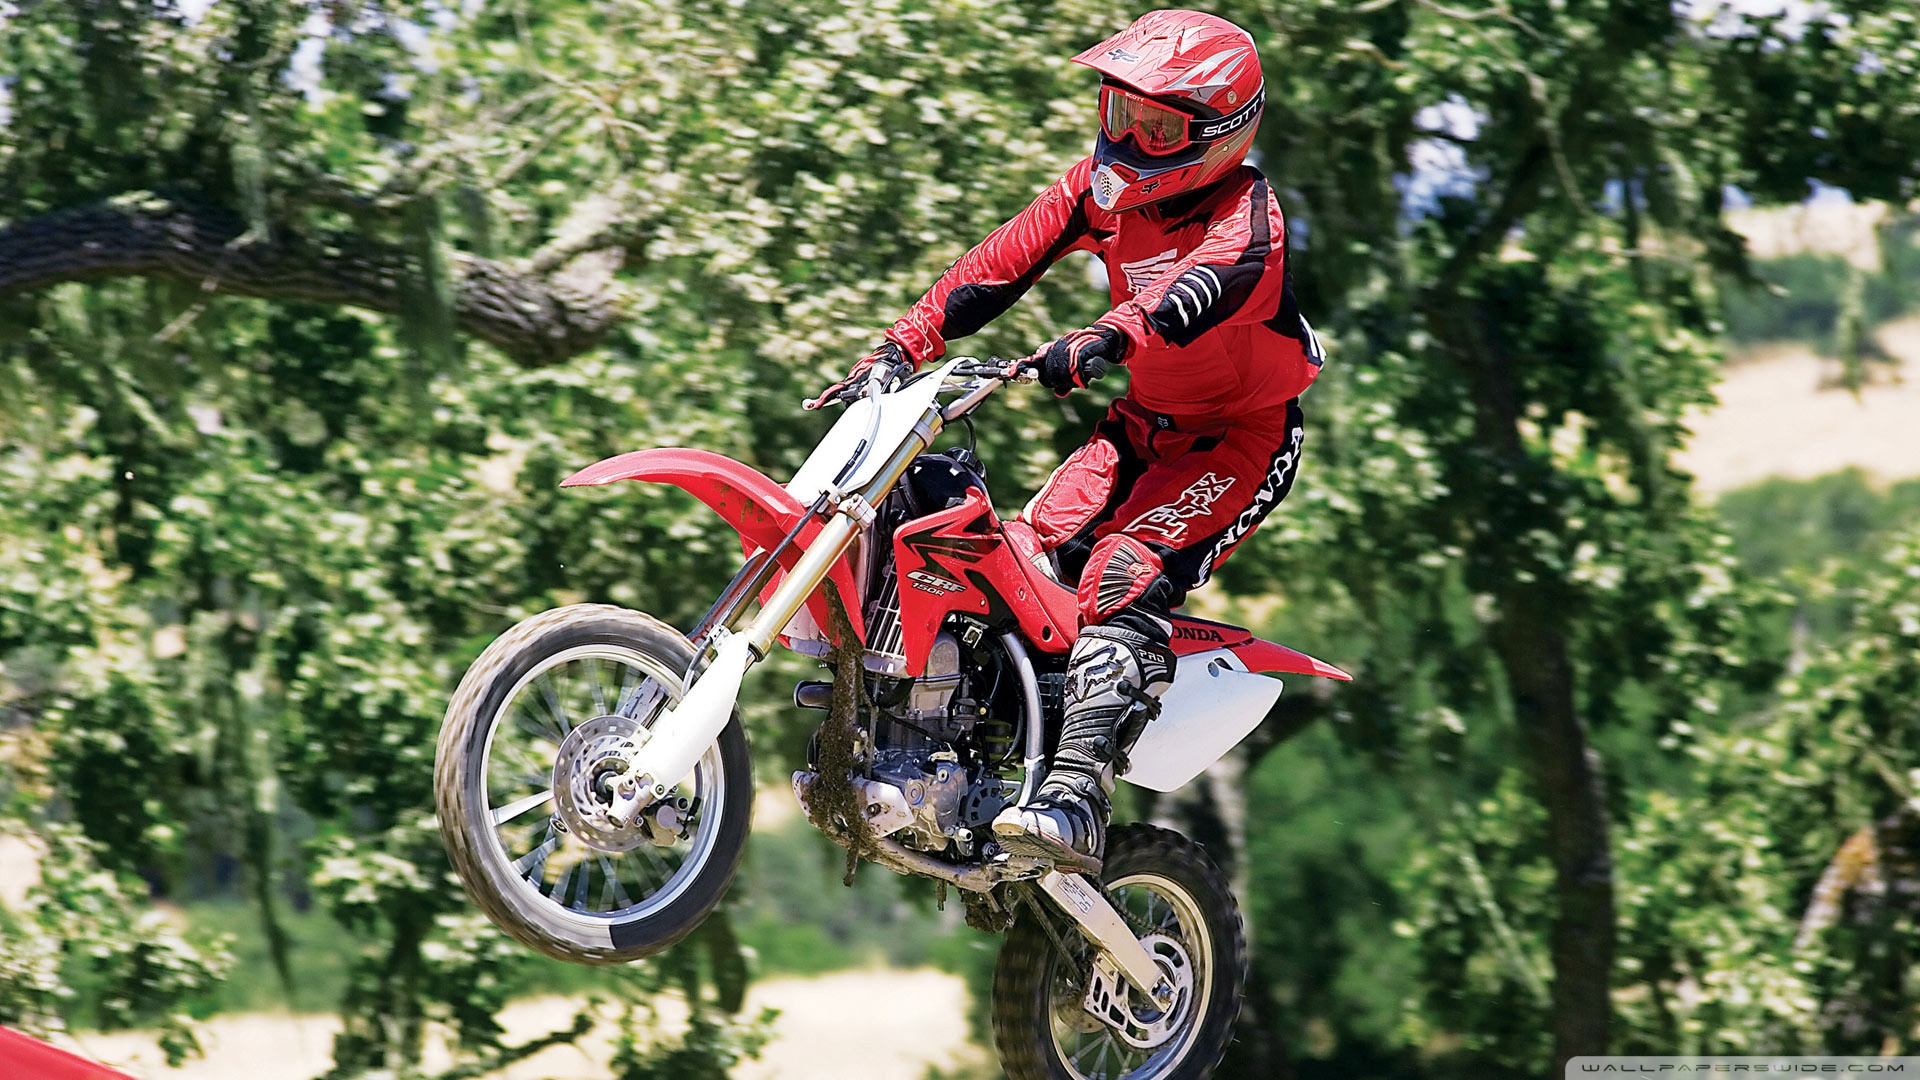 Like Or Share HD Motocross Bikes Wallpaper Pack On